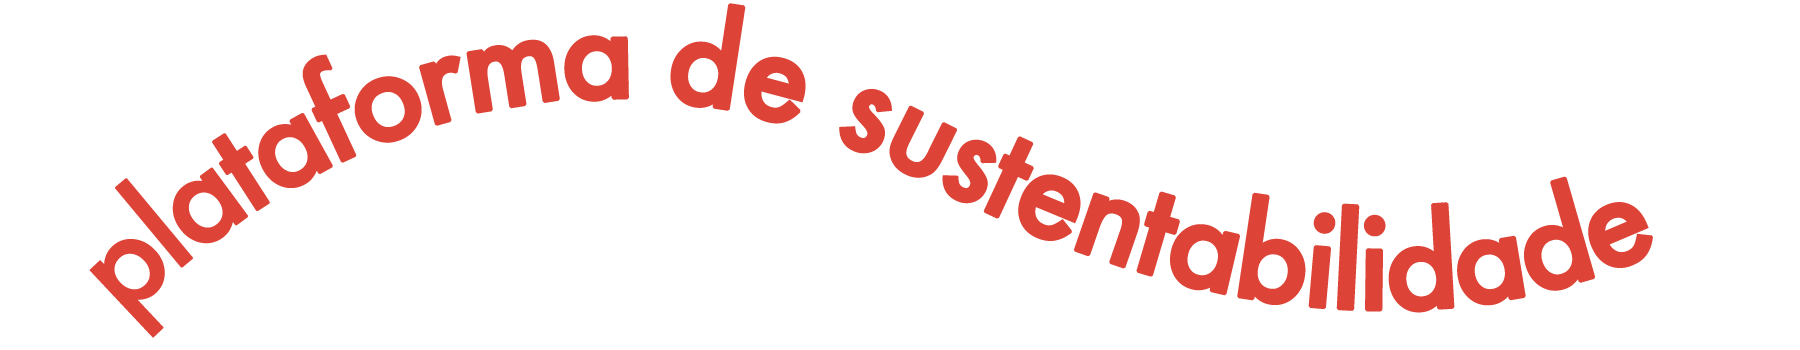 Banner escrito plataforma de sustentabilidade